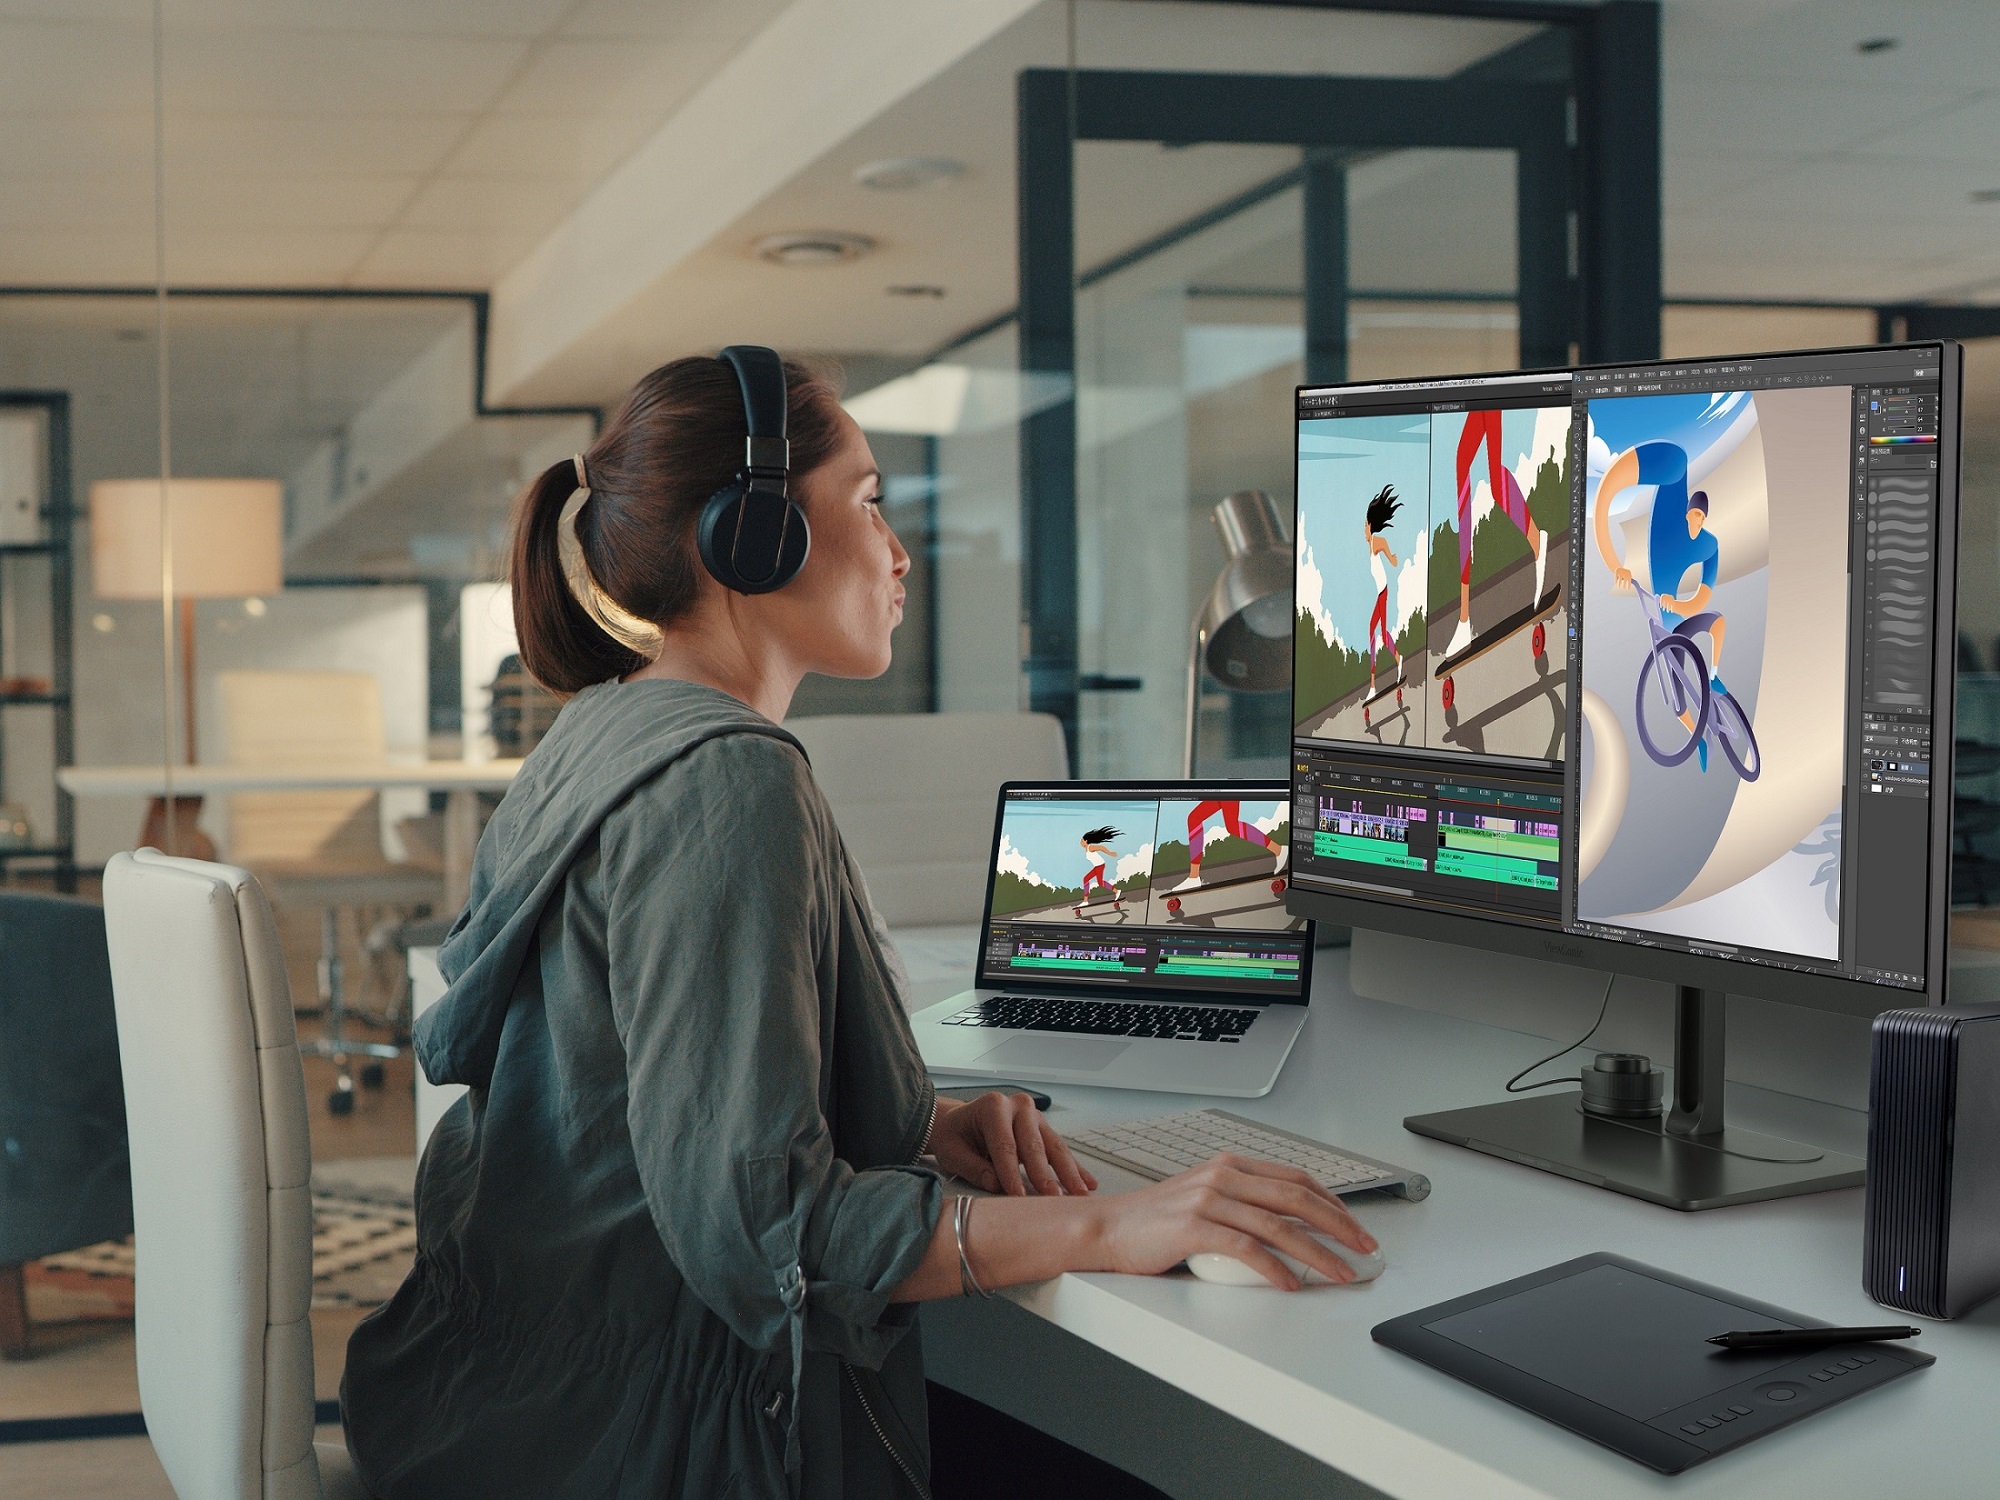 ViewSonic presenta monitores profesionales de la serie ColorPro VP76 con tecnología ColorPro extendida